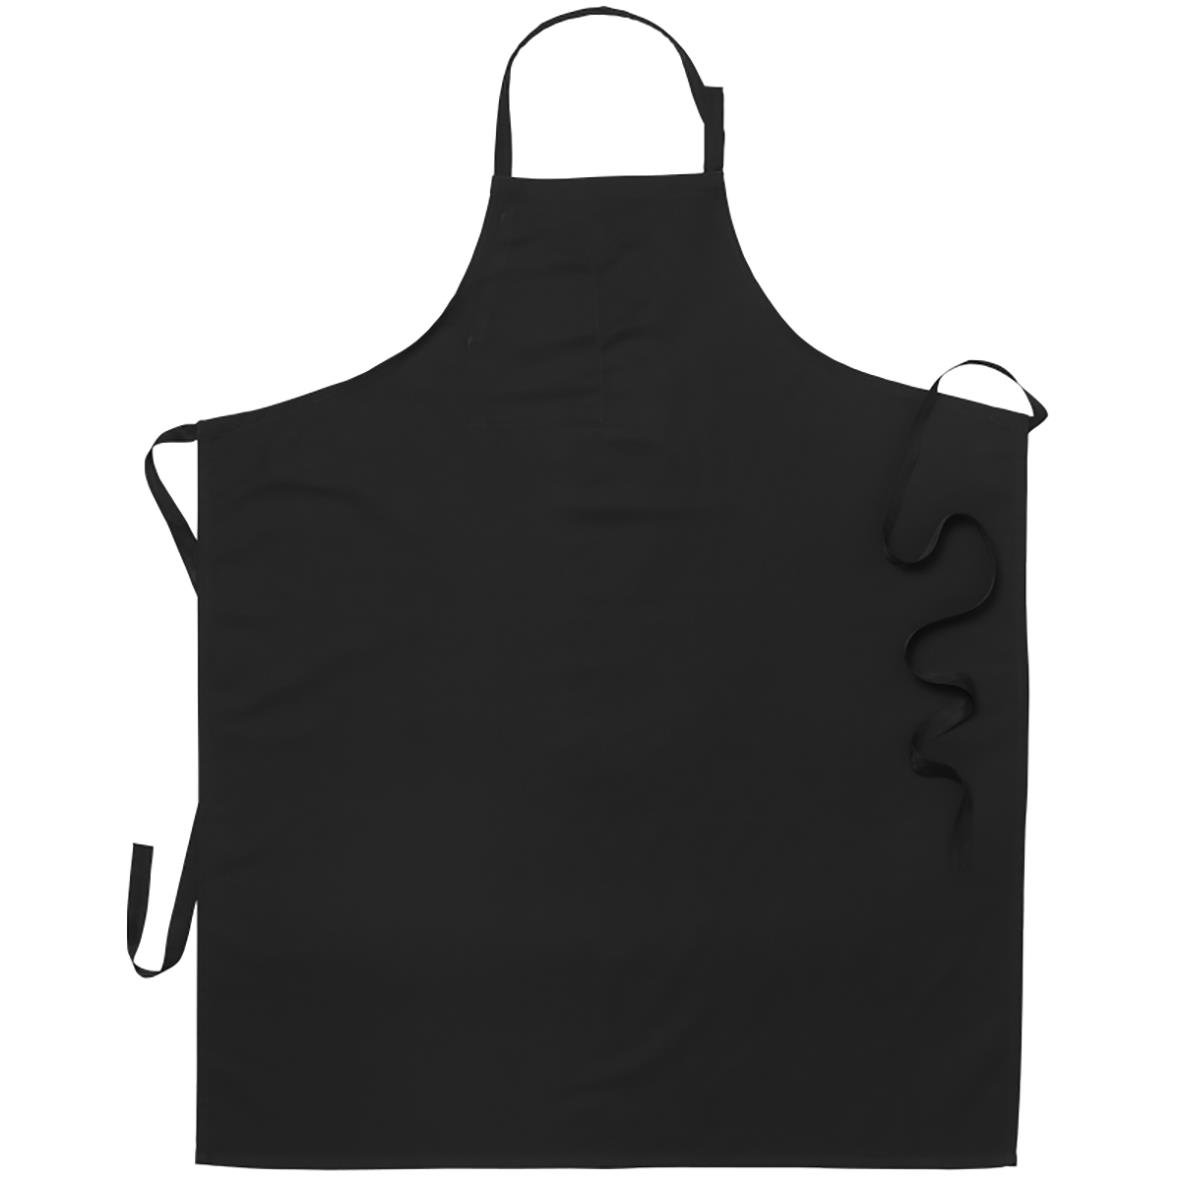 Förkläde Segers bröst bom svart 90x110cm